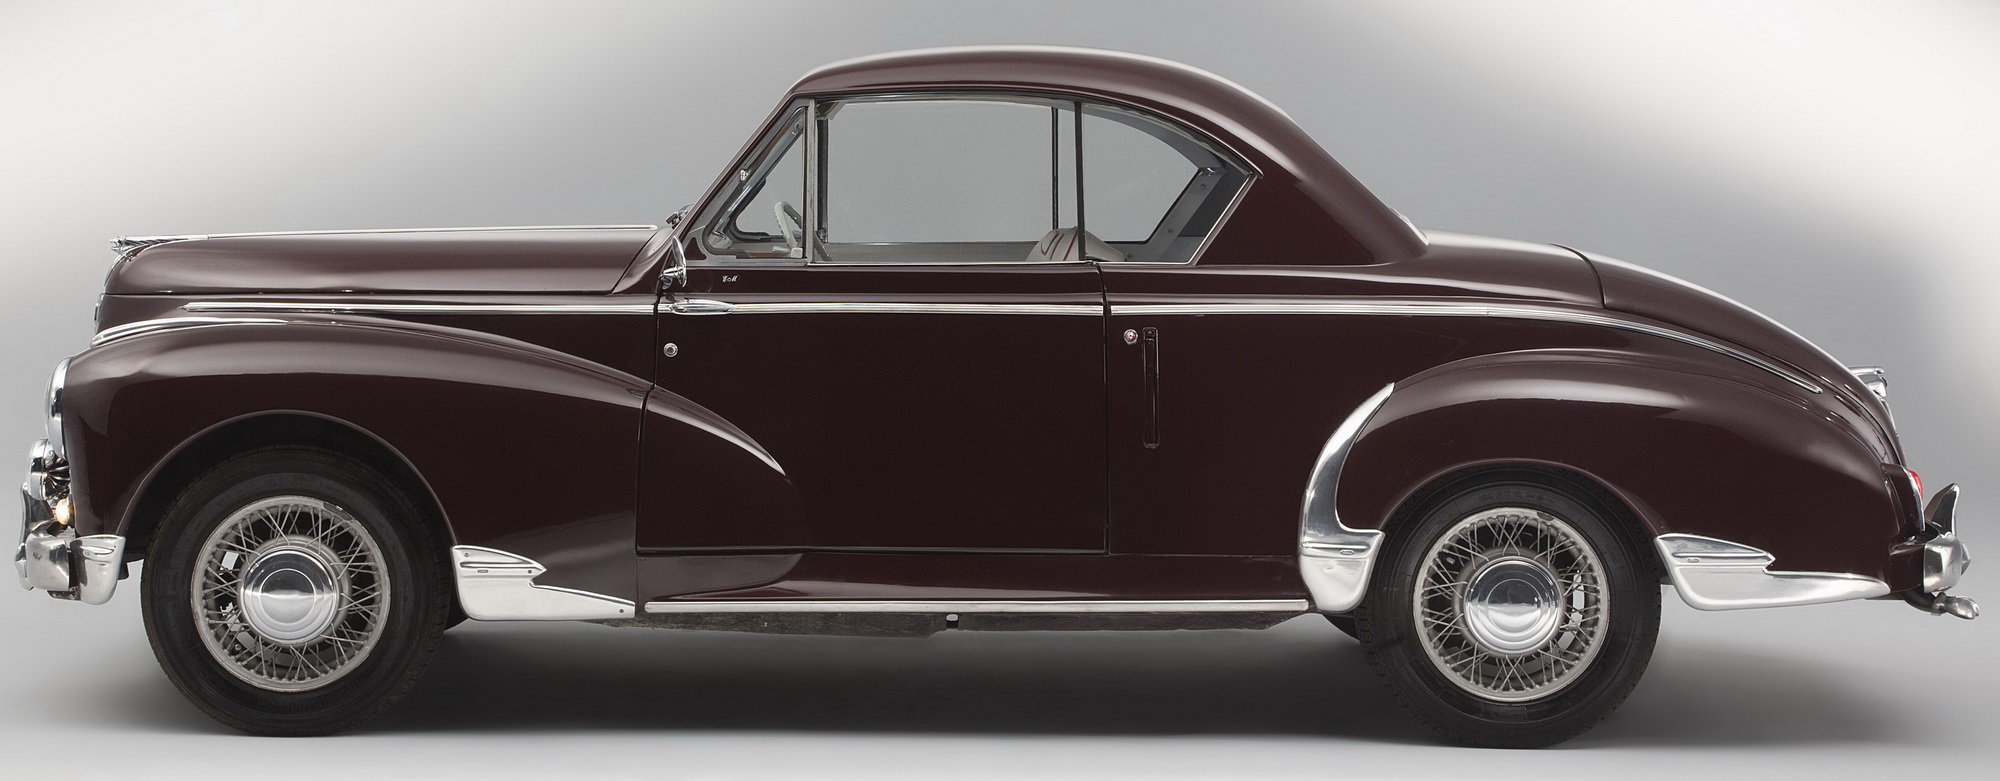 Peugeot Coupé 203 1952-1954